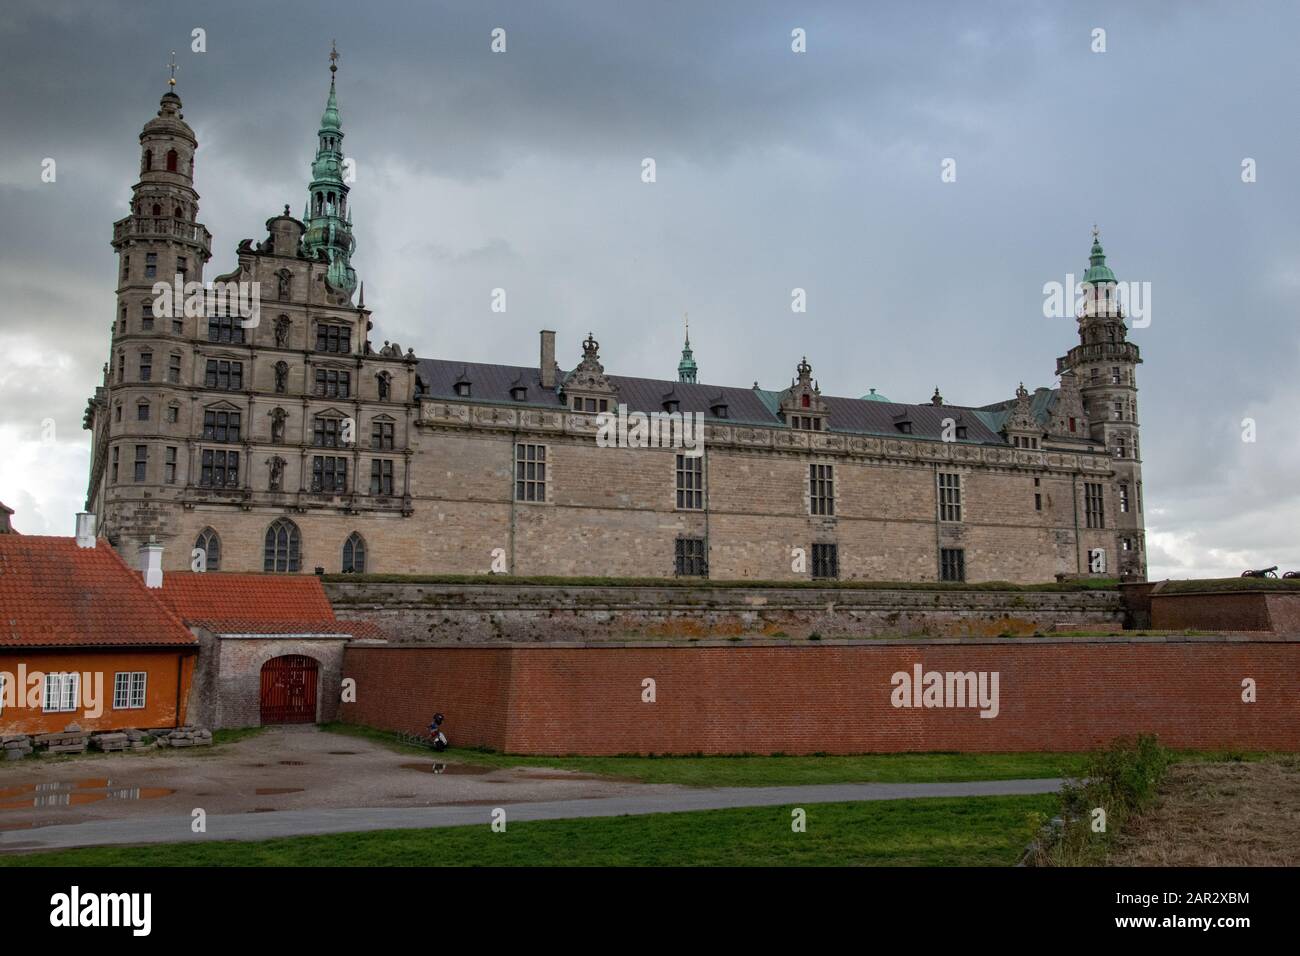 Château de Kronborg Helsingør, Danemark. Immortalisé comme Elsinore dans la pièce de William Shakespeare Hamlet. Banque D'Images